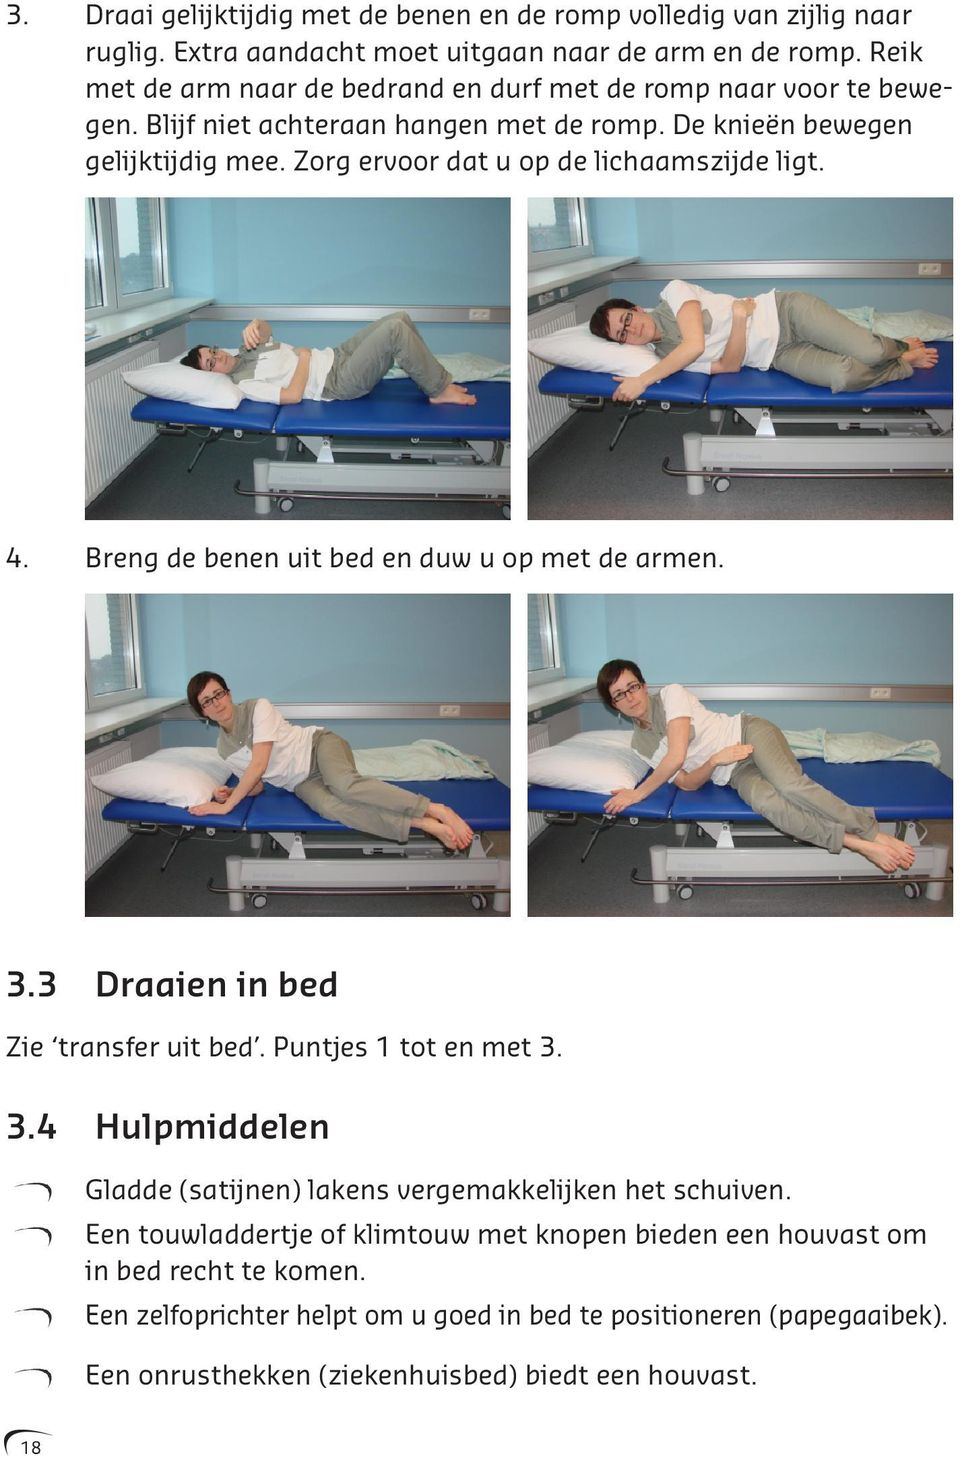 Zorg ervoor dat u op de lichaamszijde ligt. 4. Breng de benen uit bed en duw u op met de armen. 3.3 Draaien in bed Zie transfer uit bed. Puntjes 1 tot en met 3. 3.4 Hulpmiddelen Gladde (satijnen) lakens vergemakkelijken het schuiven.